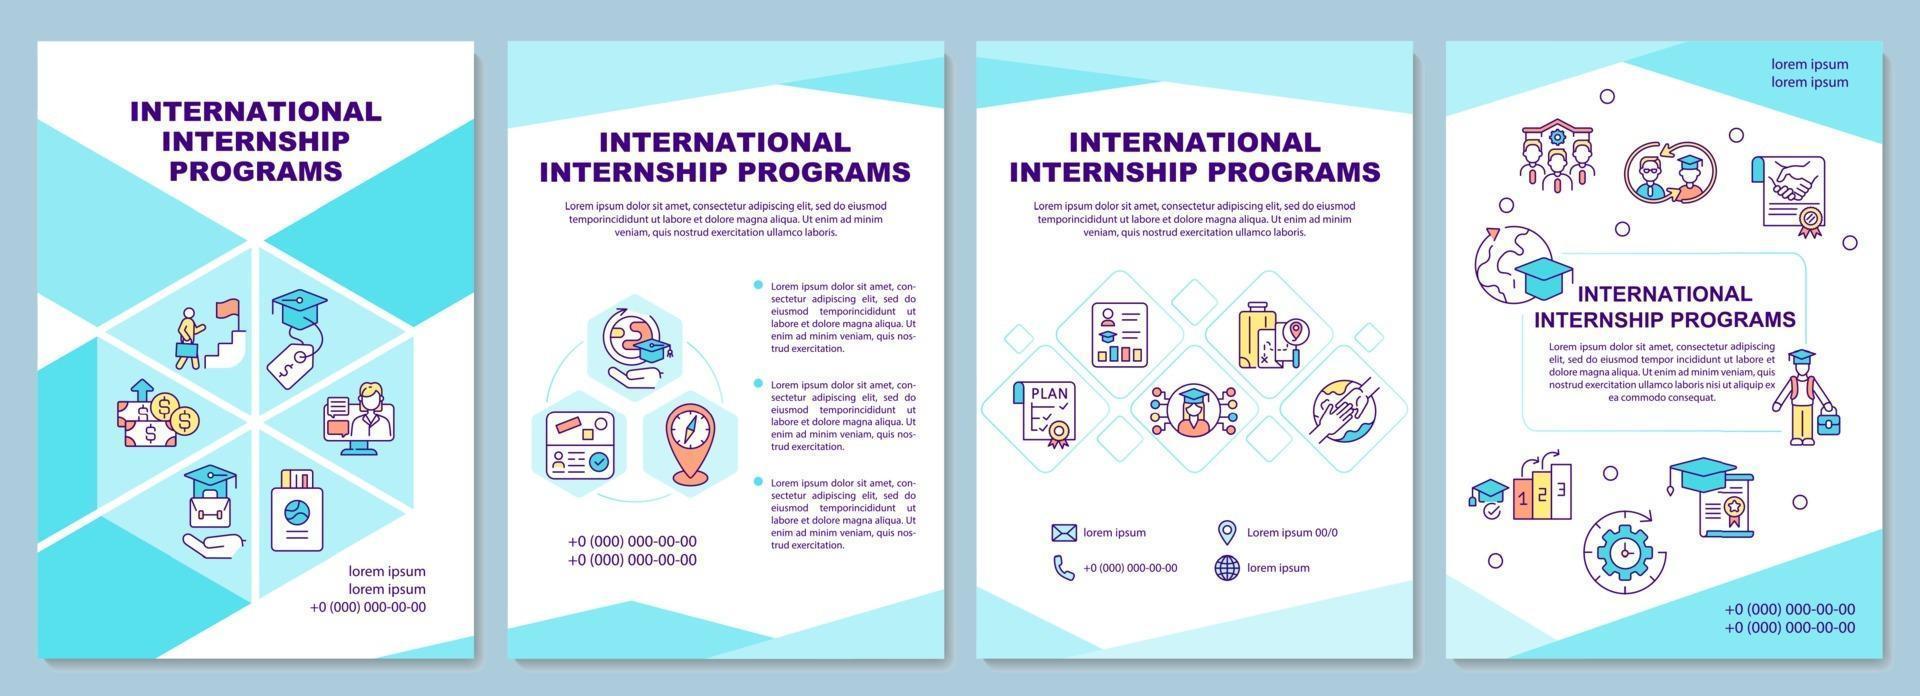 International internship programs brochure template vector